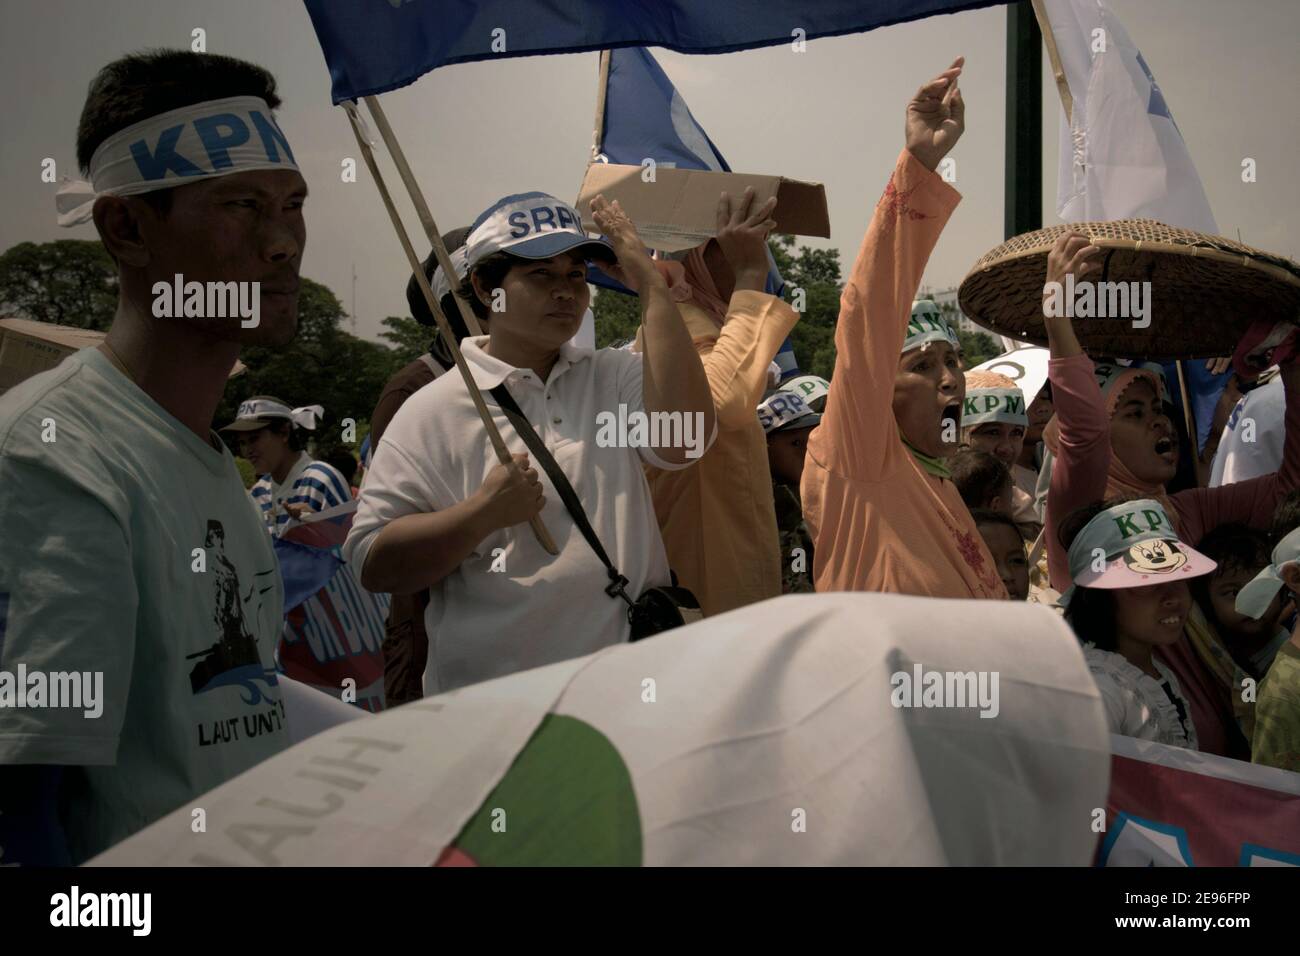 Les familles de pêcheurs exprimant leur soutien à un ornement organisé pour protester contre le plan du gouvernement indonésien d'augmenter les prix de détail des carburants subventionnés. Centre de Jakarta, Jakarta, Indonésie. Photo d'archives (2008). Banque D'Images